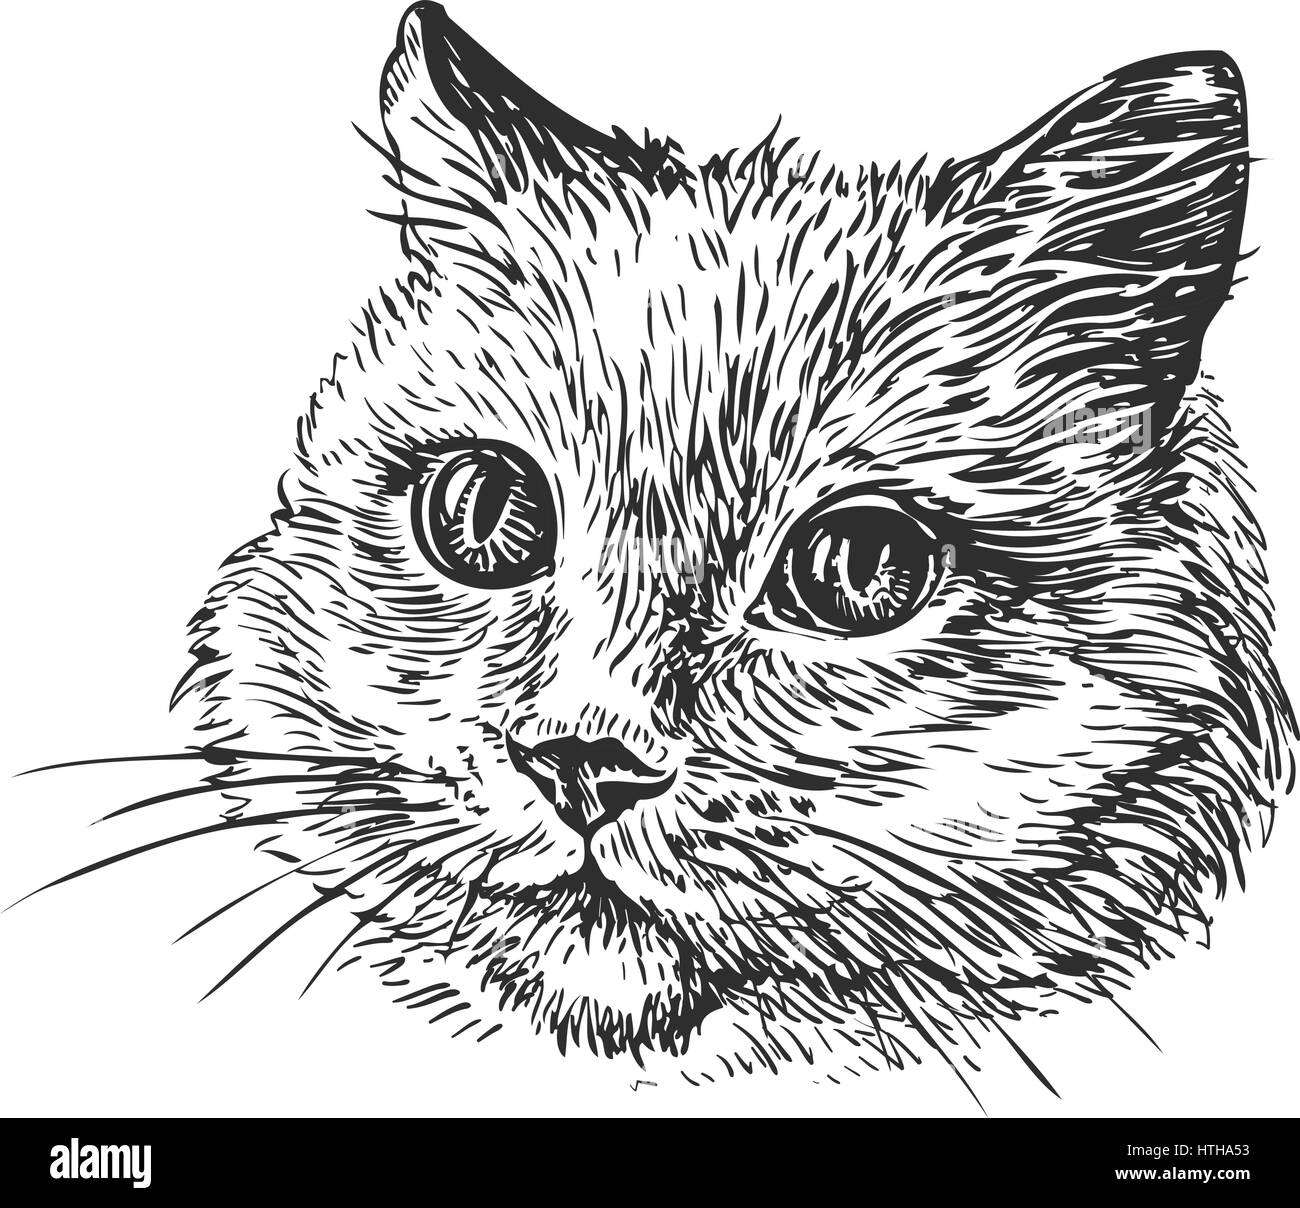 Disegnate a mano ritratto di cat. Schizzo illustrazione vettoriale Illustrazione Vettoriale